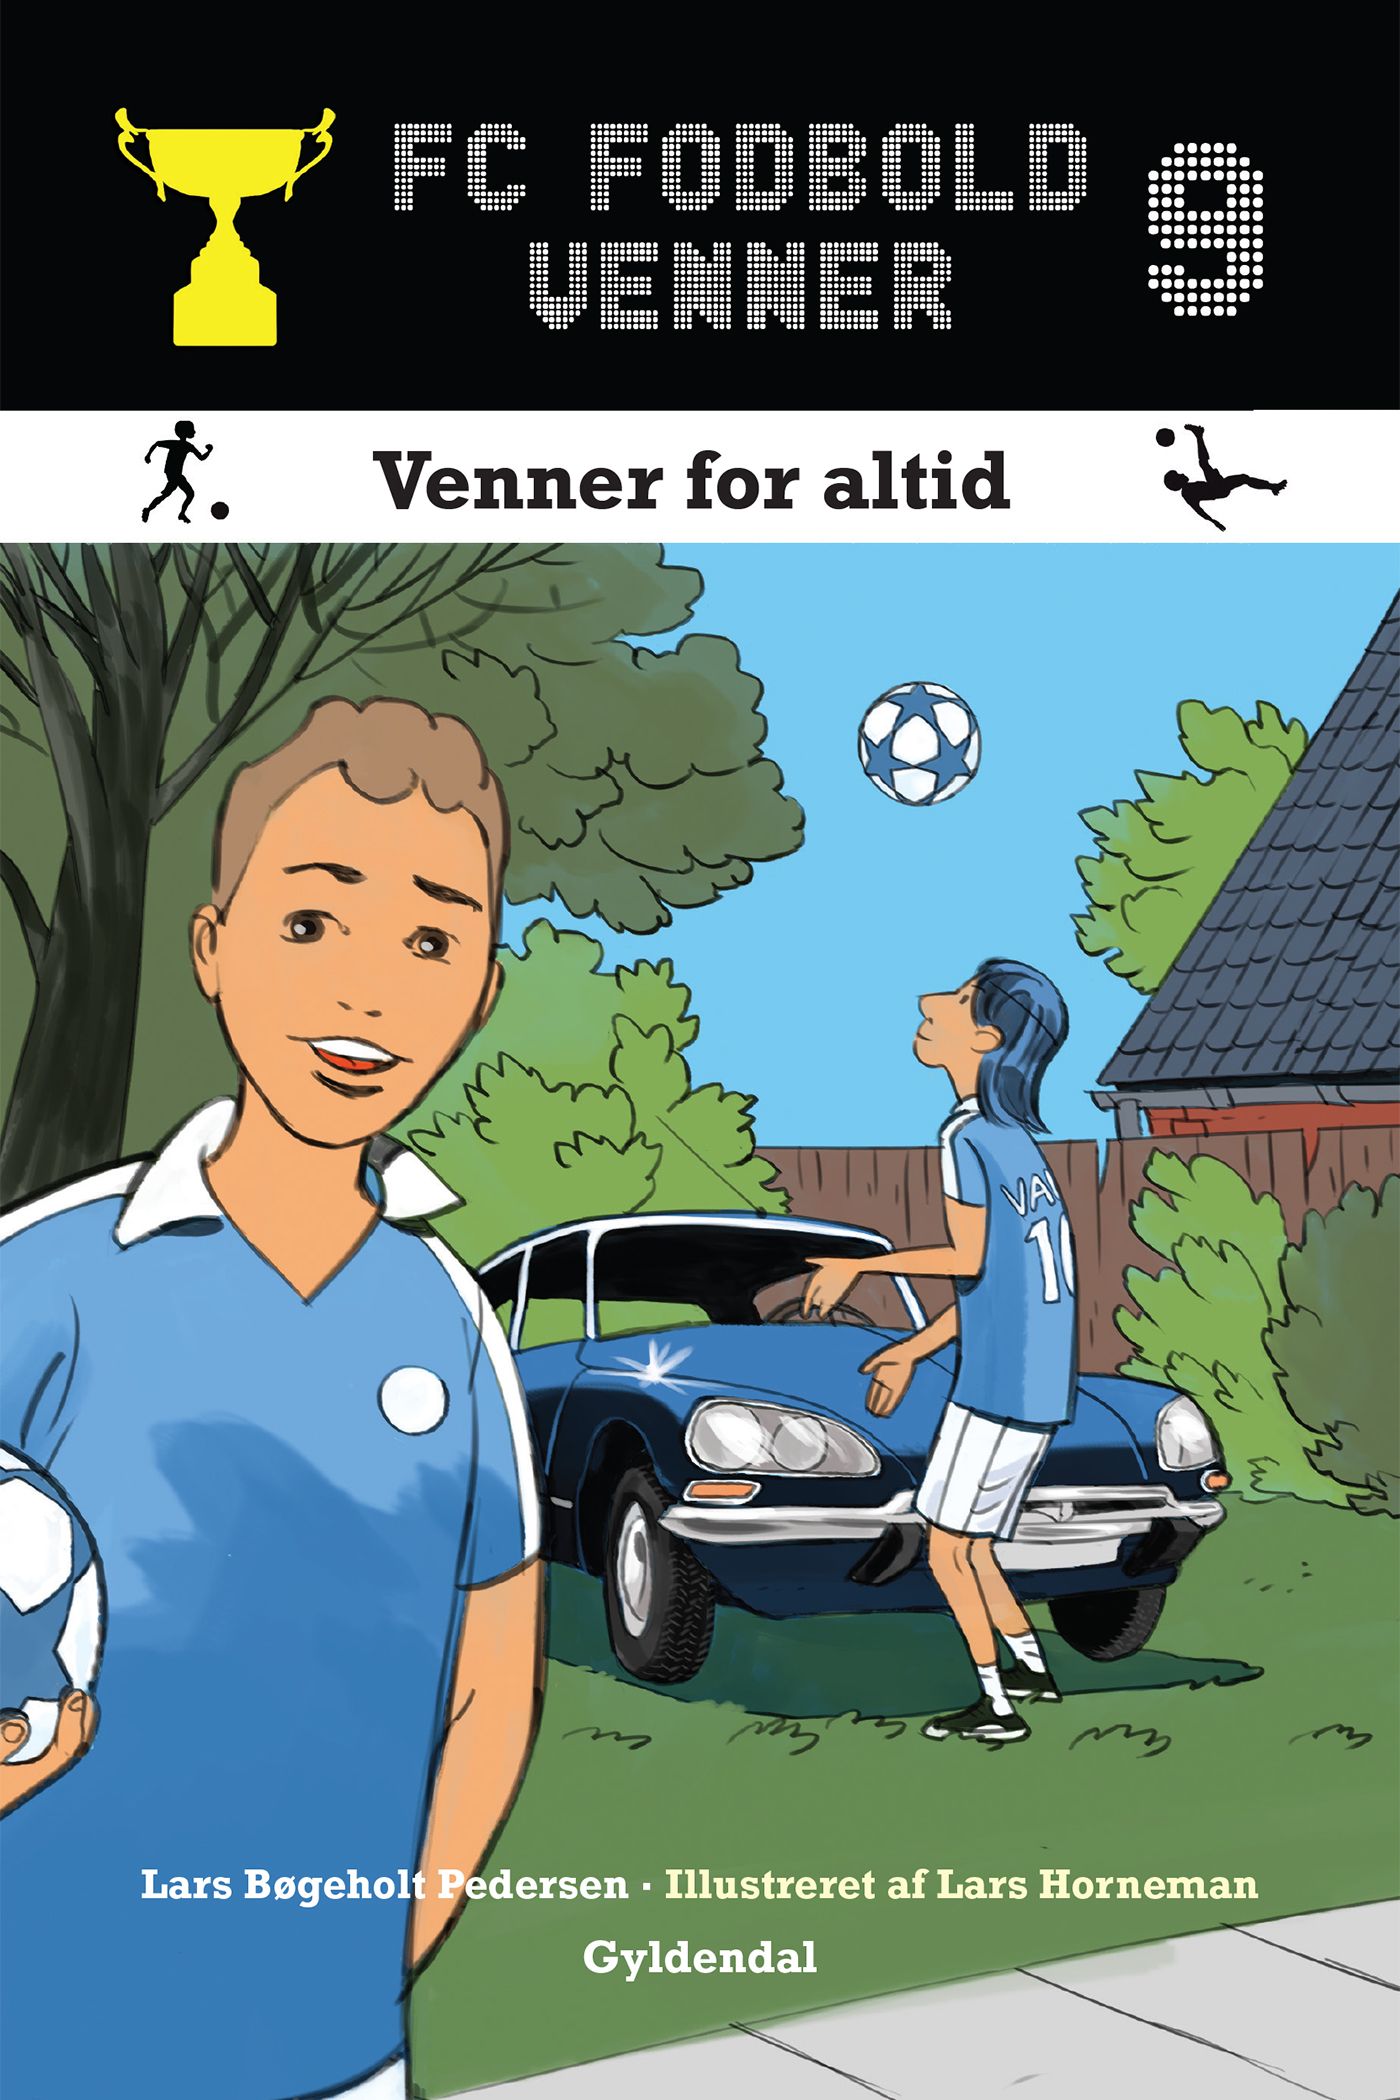 FC Fodboldvenner 9 - Venner for altid, e-bok av Lars Bøgeholt Pedersen